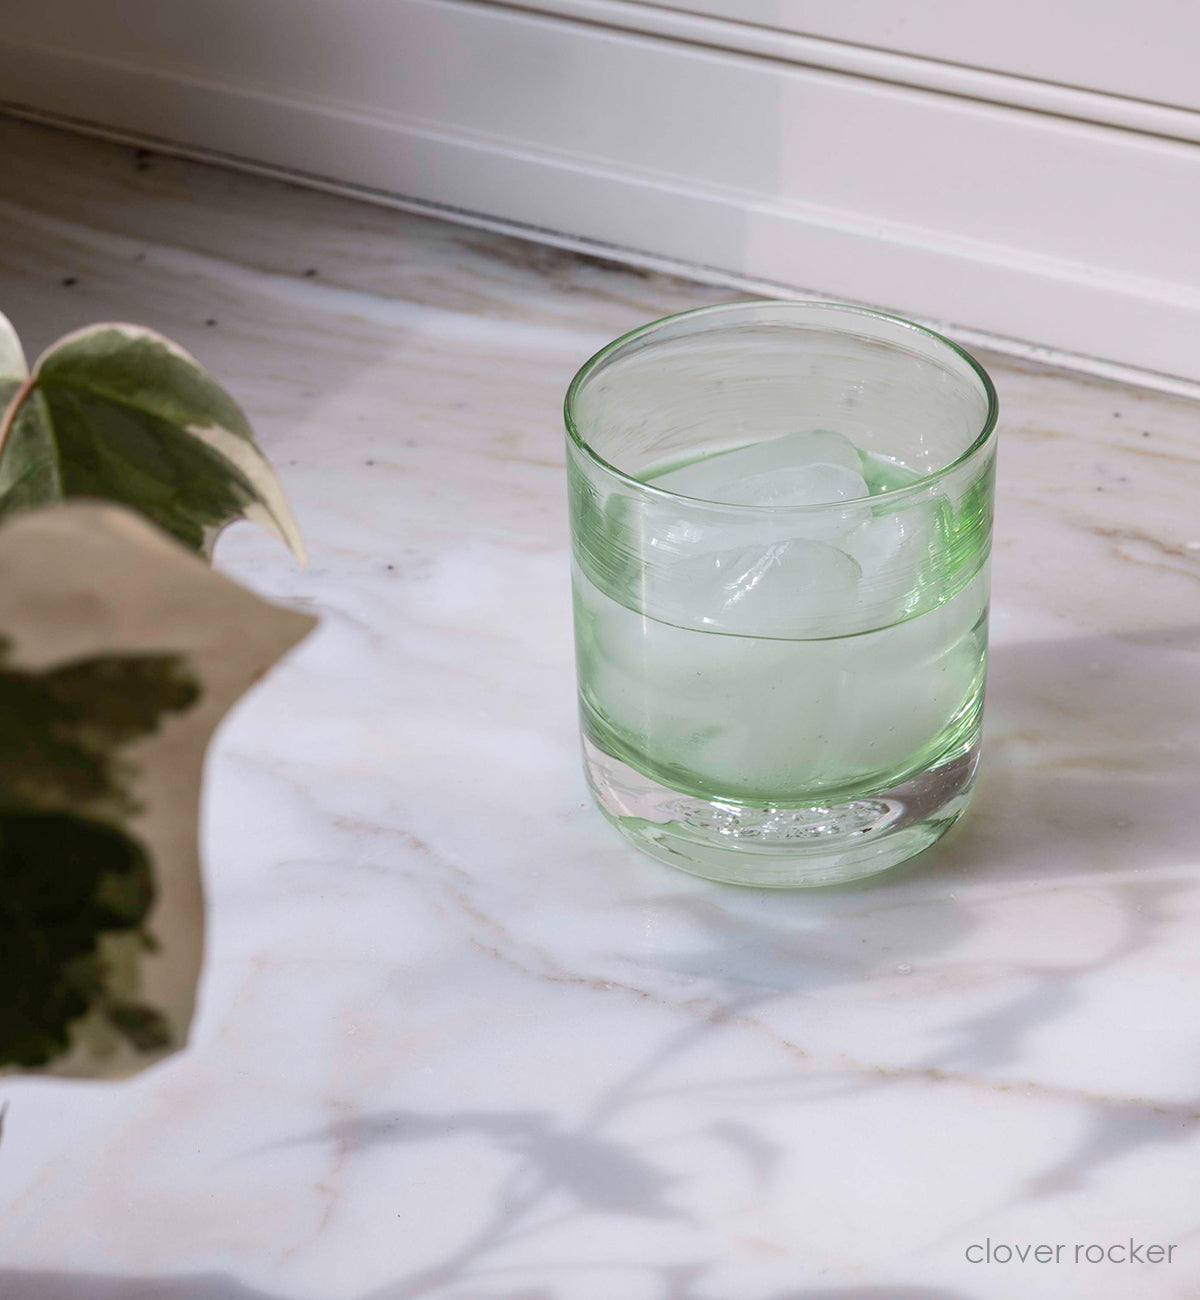 clover rocker light green transparent, hand-blown glass lowball drinking glass